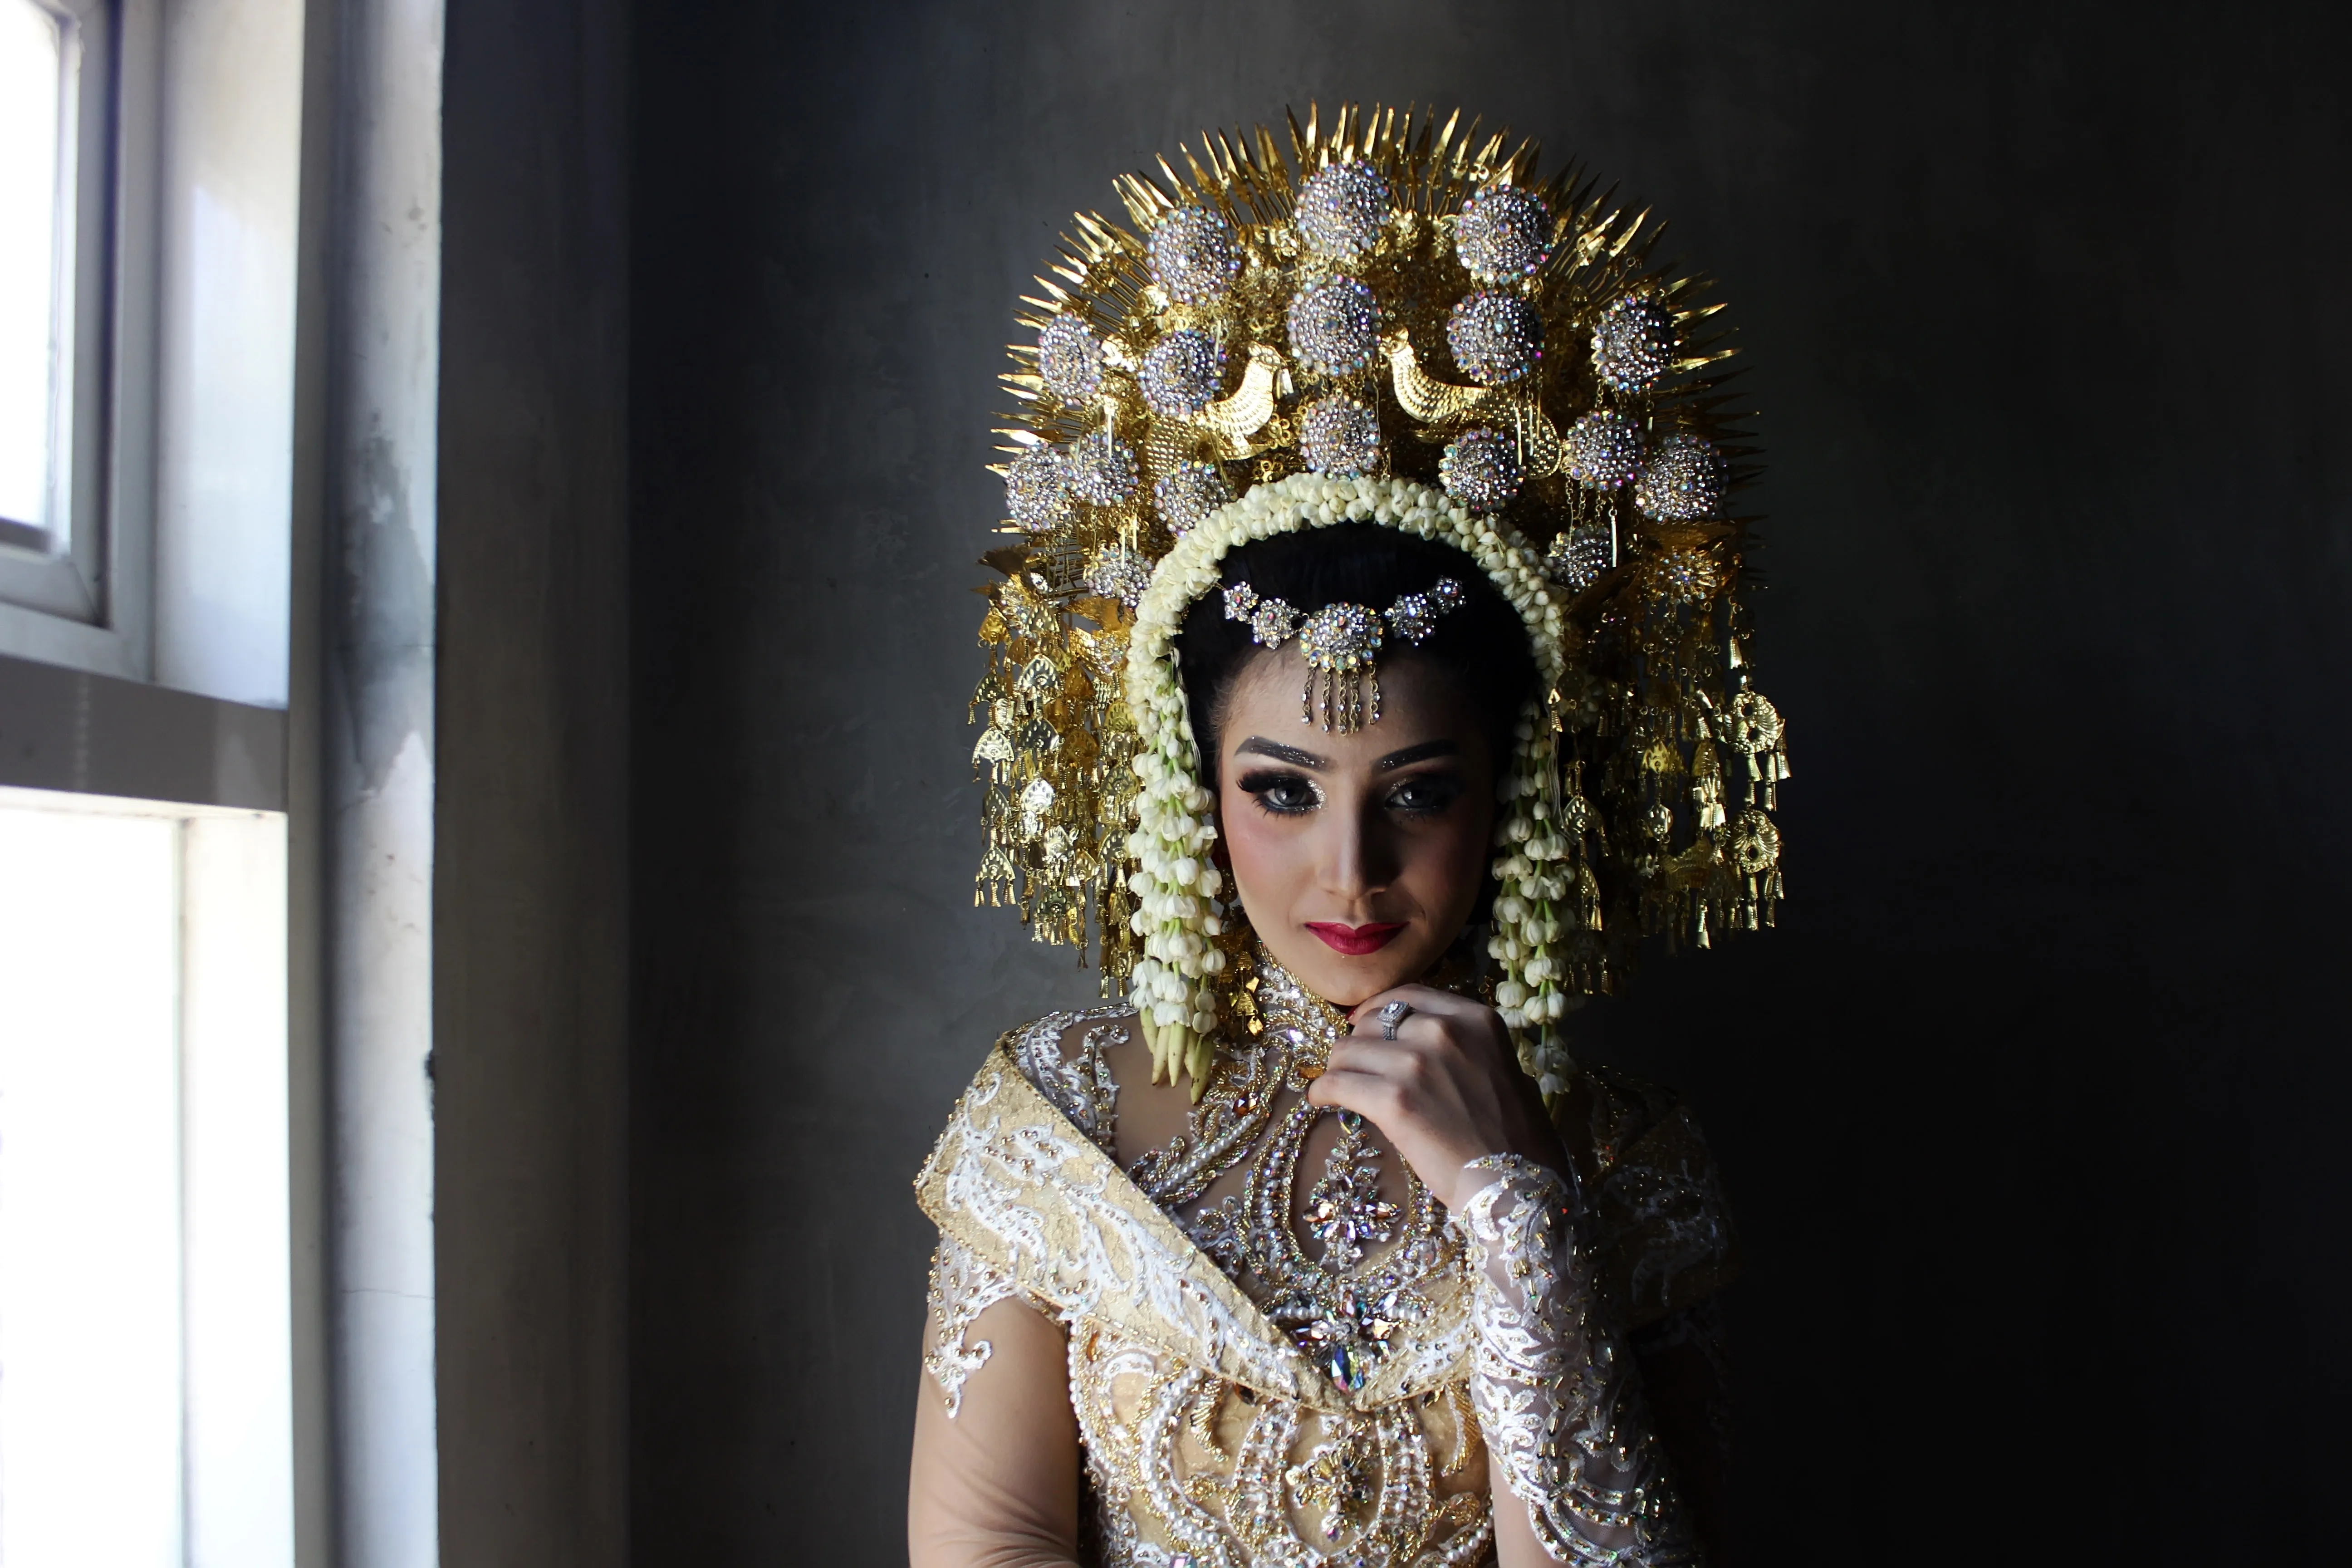 Wearing gold. Девушка в короне. Туркменская девушка с короной. Девочка с короной в золотом платье. Шаблоны девуш Малазийская невеств в золотом головном уборе фотоа.